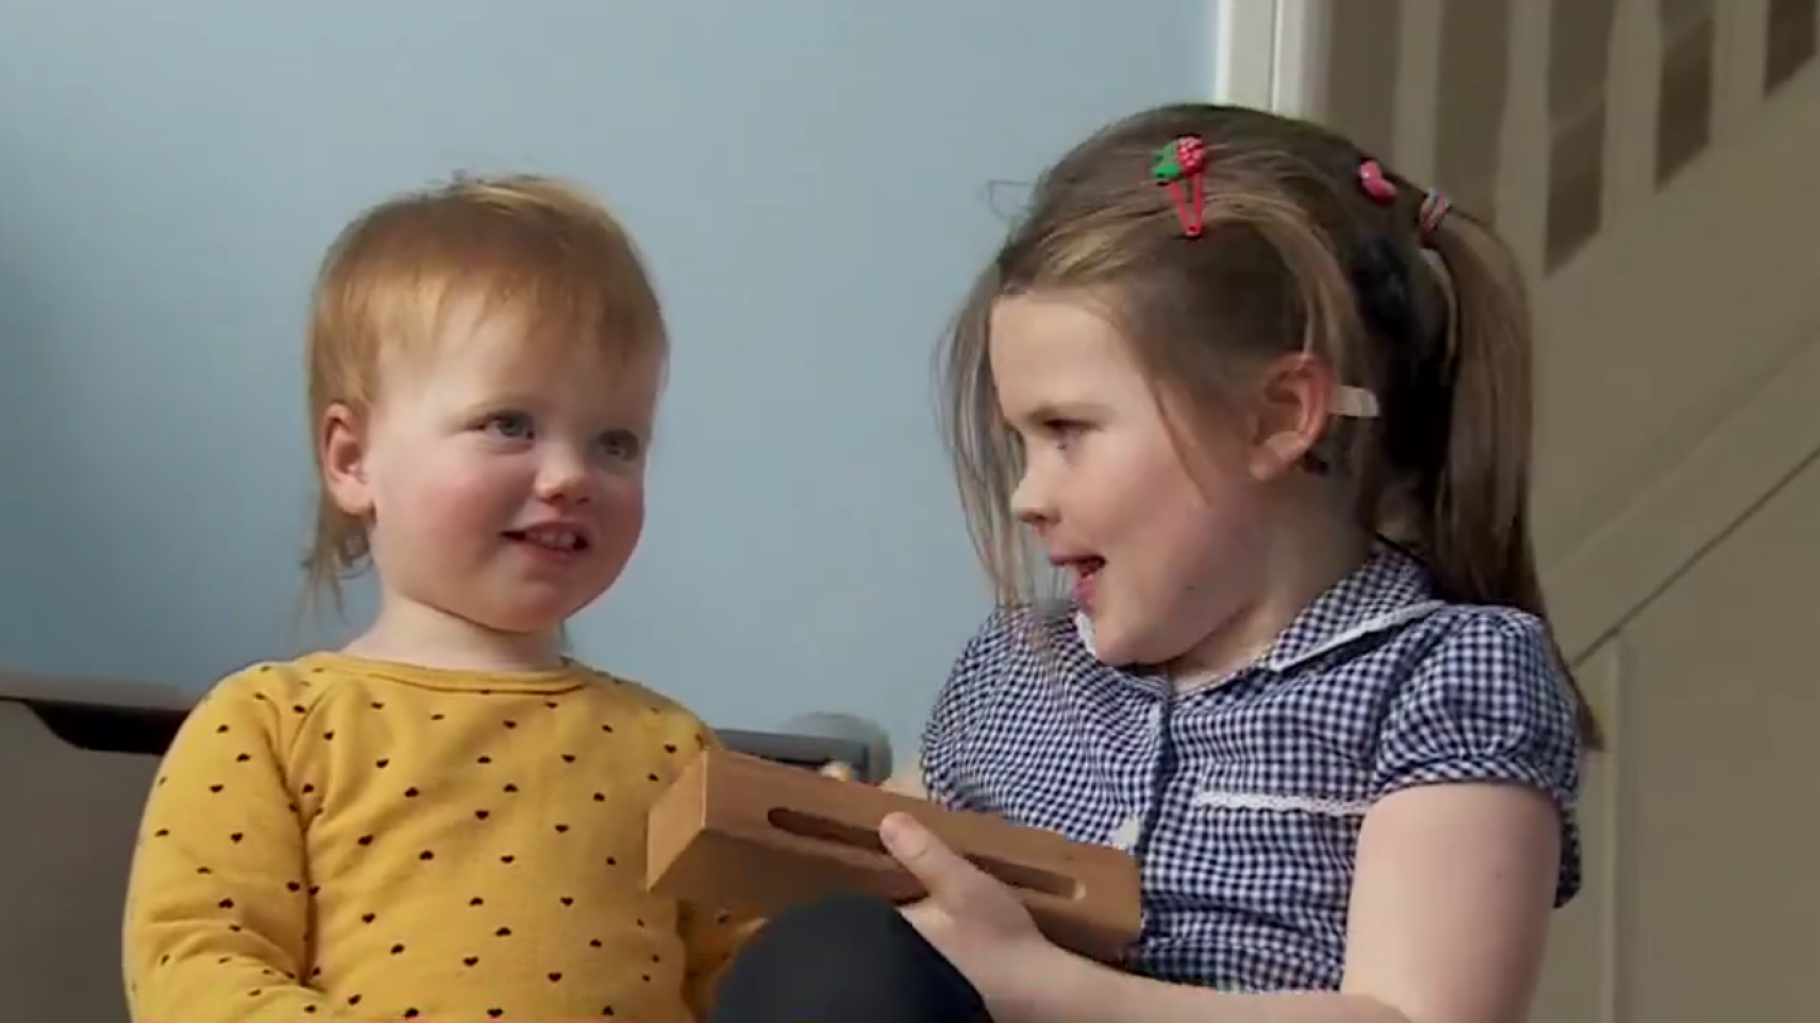   Au Royaume-Uni, une petite fille née sourde peut désormais entendre après une thérapie génique réussie  